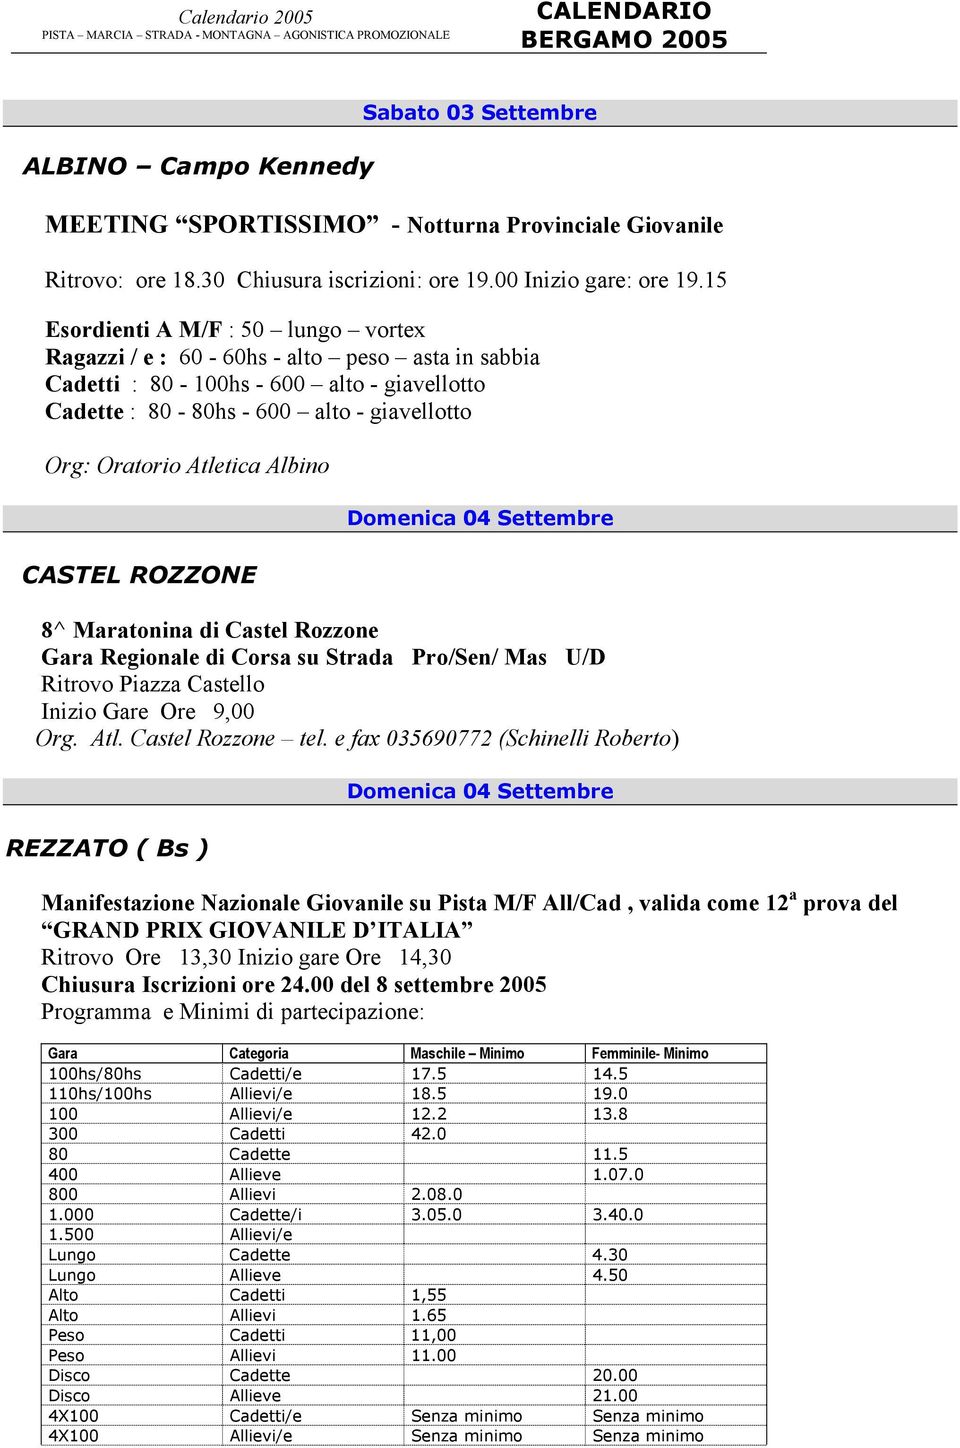 Albino CASTEL ROZZONE Domenica 04 Settembre 8^ Maratonina di Castel Rozzone Gara Regionale di Corsa su Strada Pro/Sen/ Mas U/D Ritrovo Piazza Castello Inizio Gare Ore 9,00 Org. Atl.